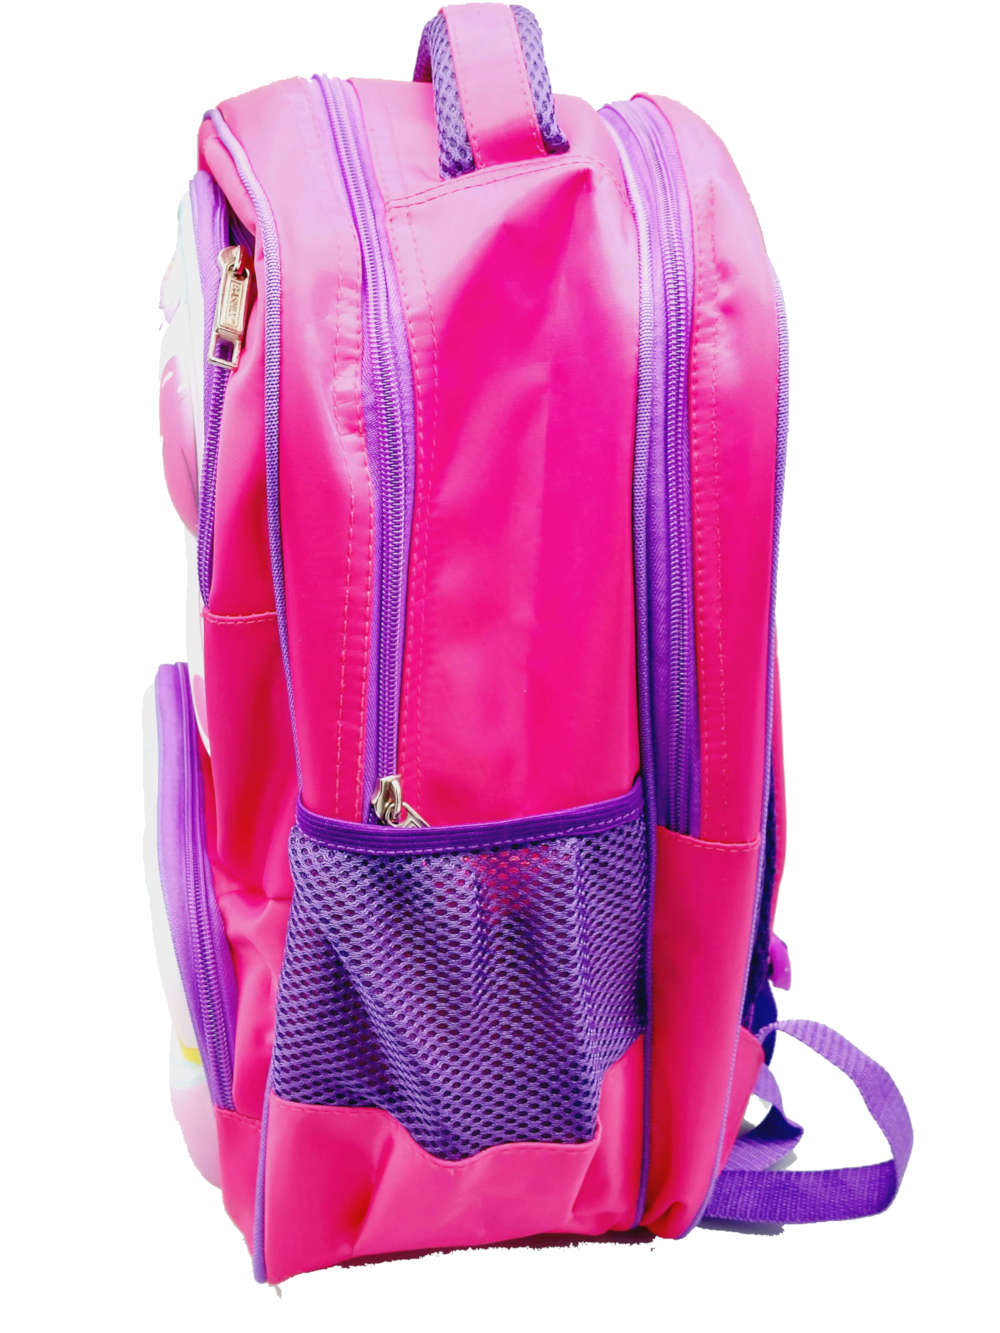 Baby Unicorn Themed Backpack For Kids Disney School Bag